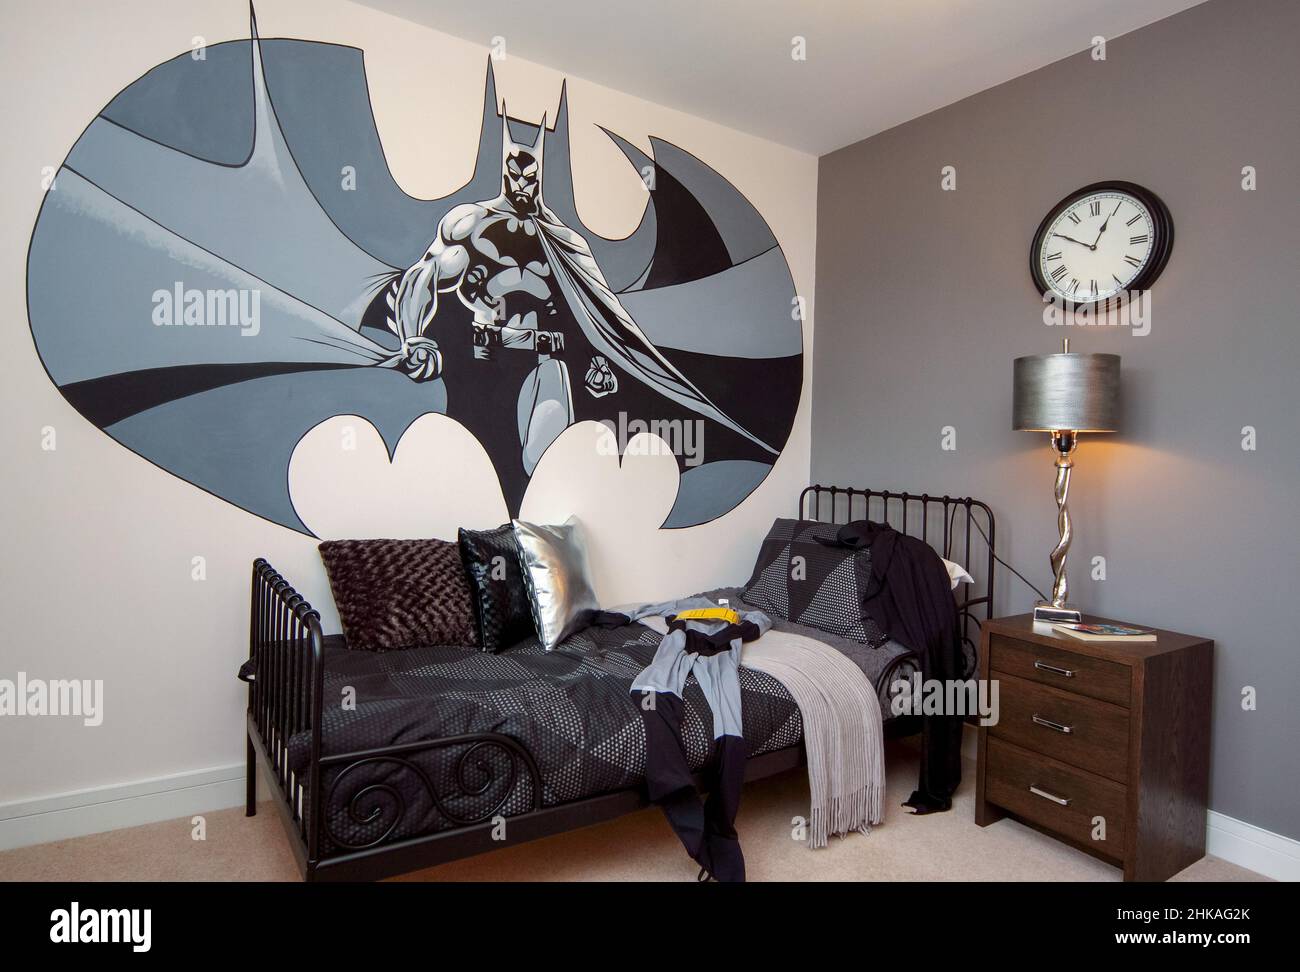 Bambini ragazzi camera da letto con drammatico muro murale di batman, letto singolo, abito batman, telaio letto in metallo Foto Stock